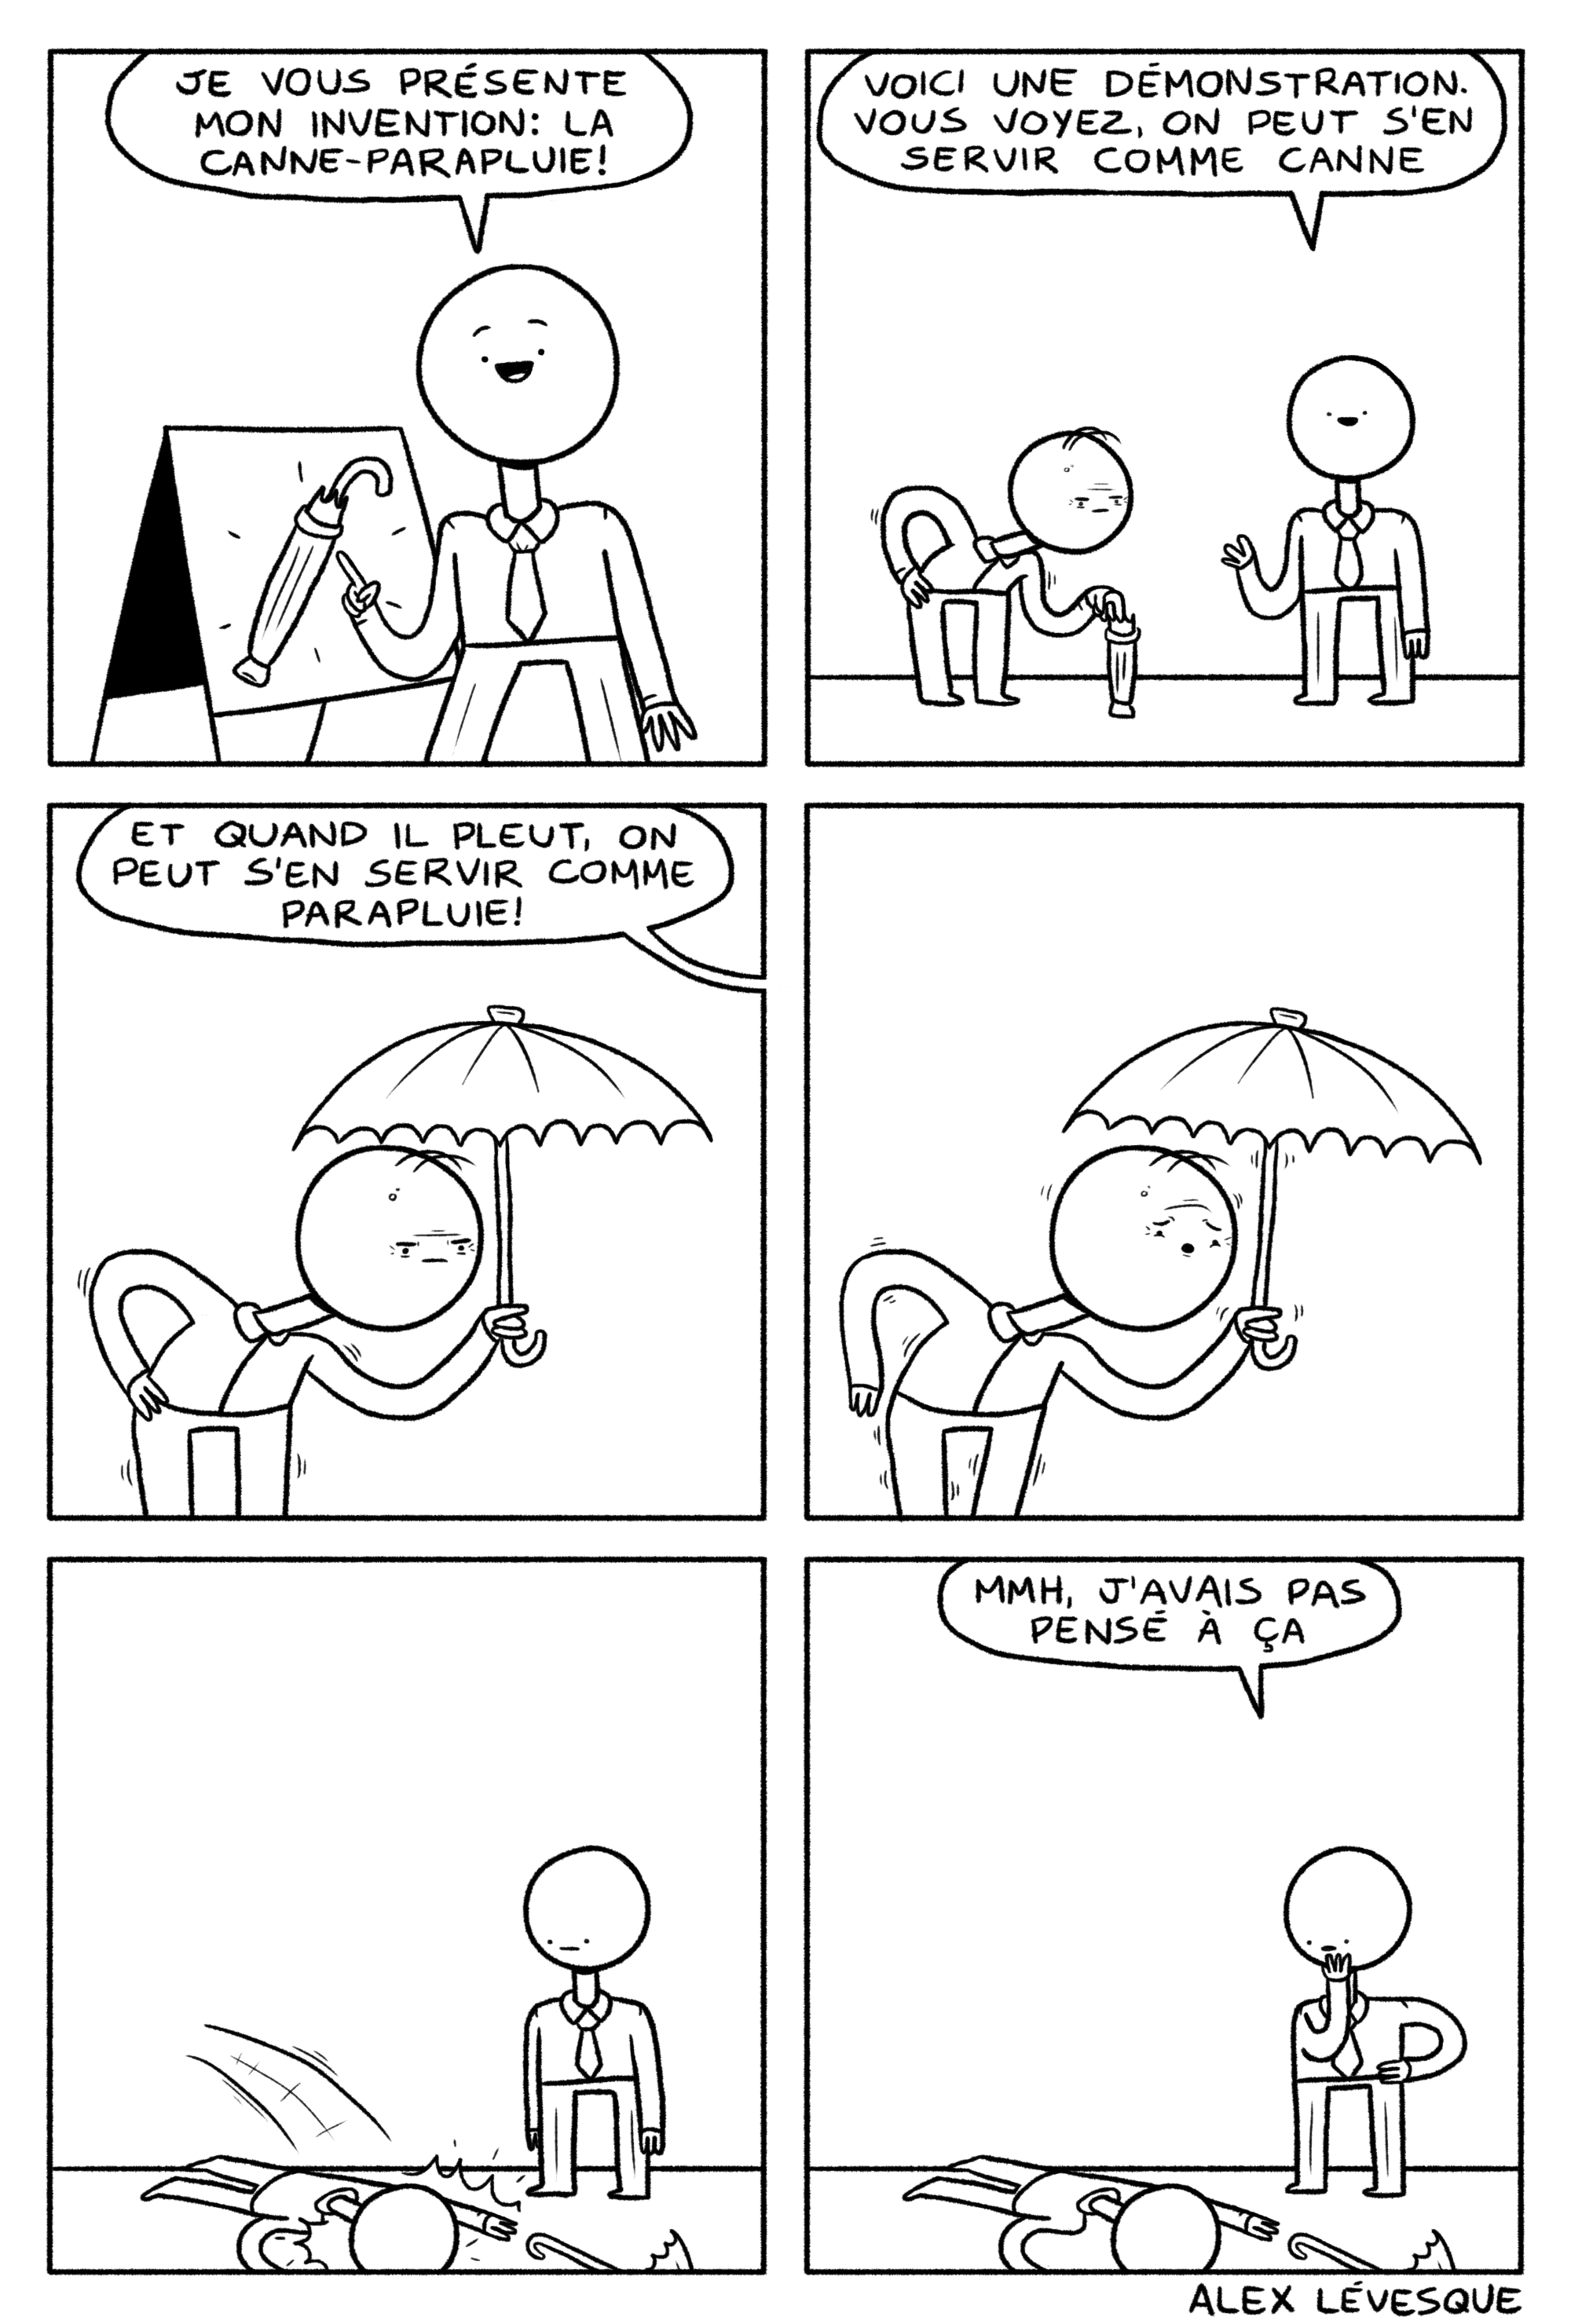 Canne-parapluie